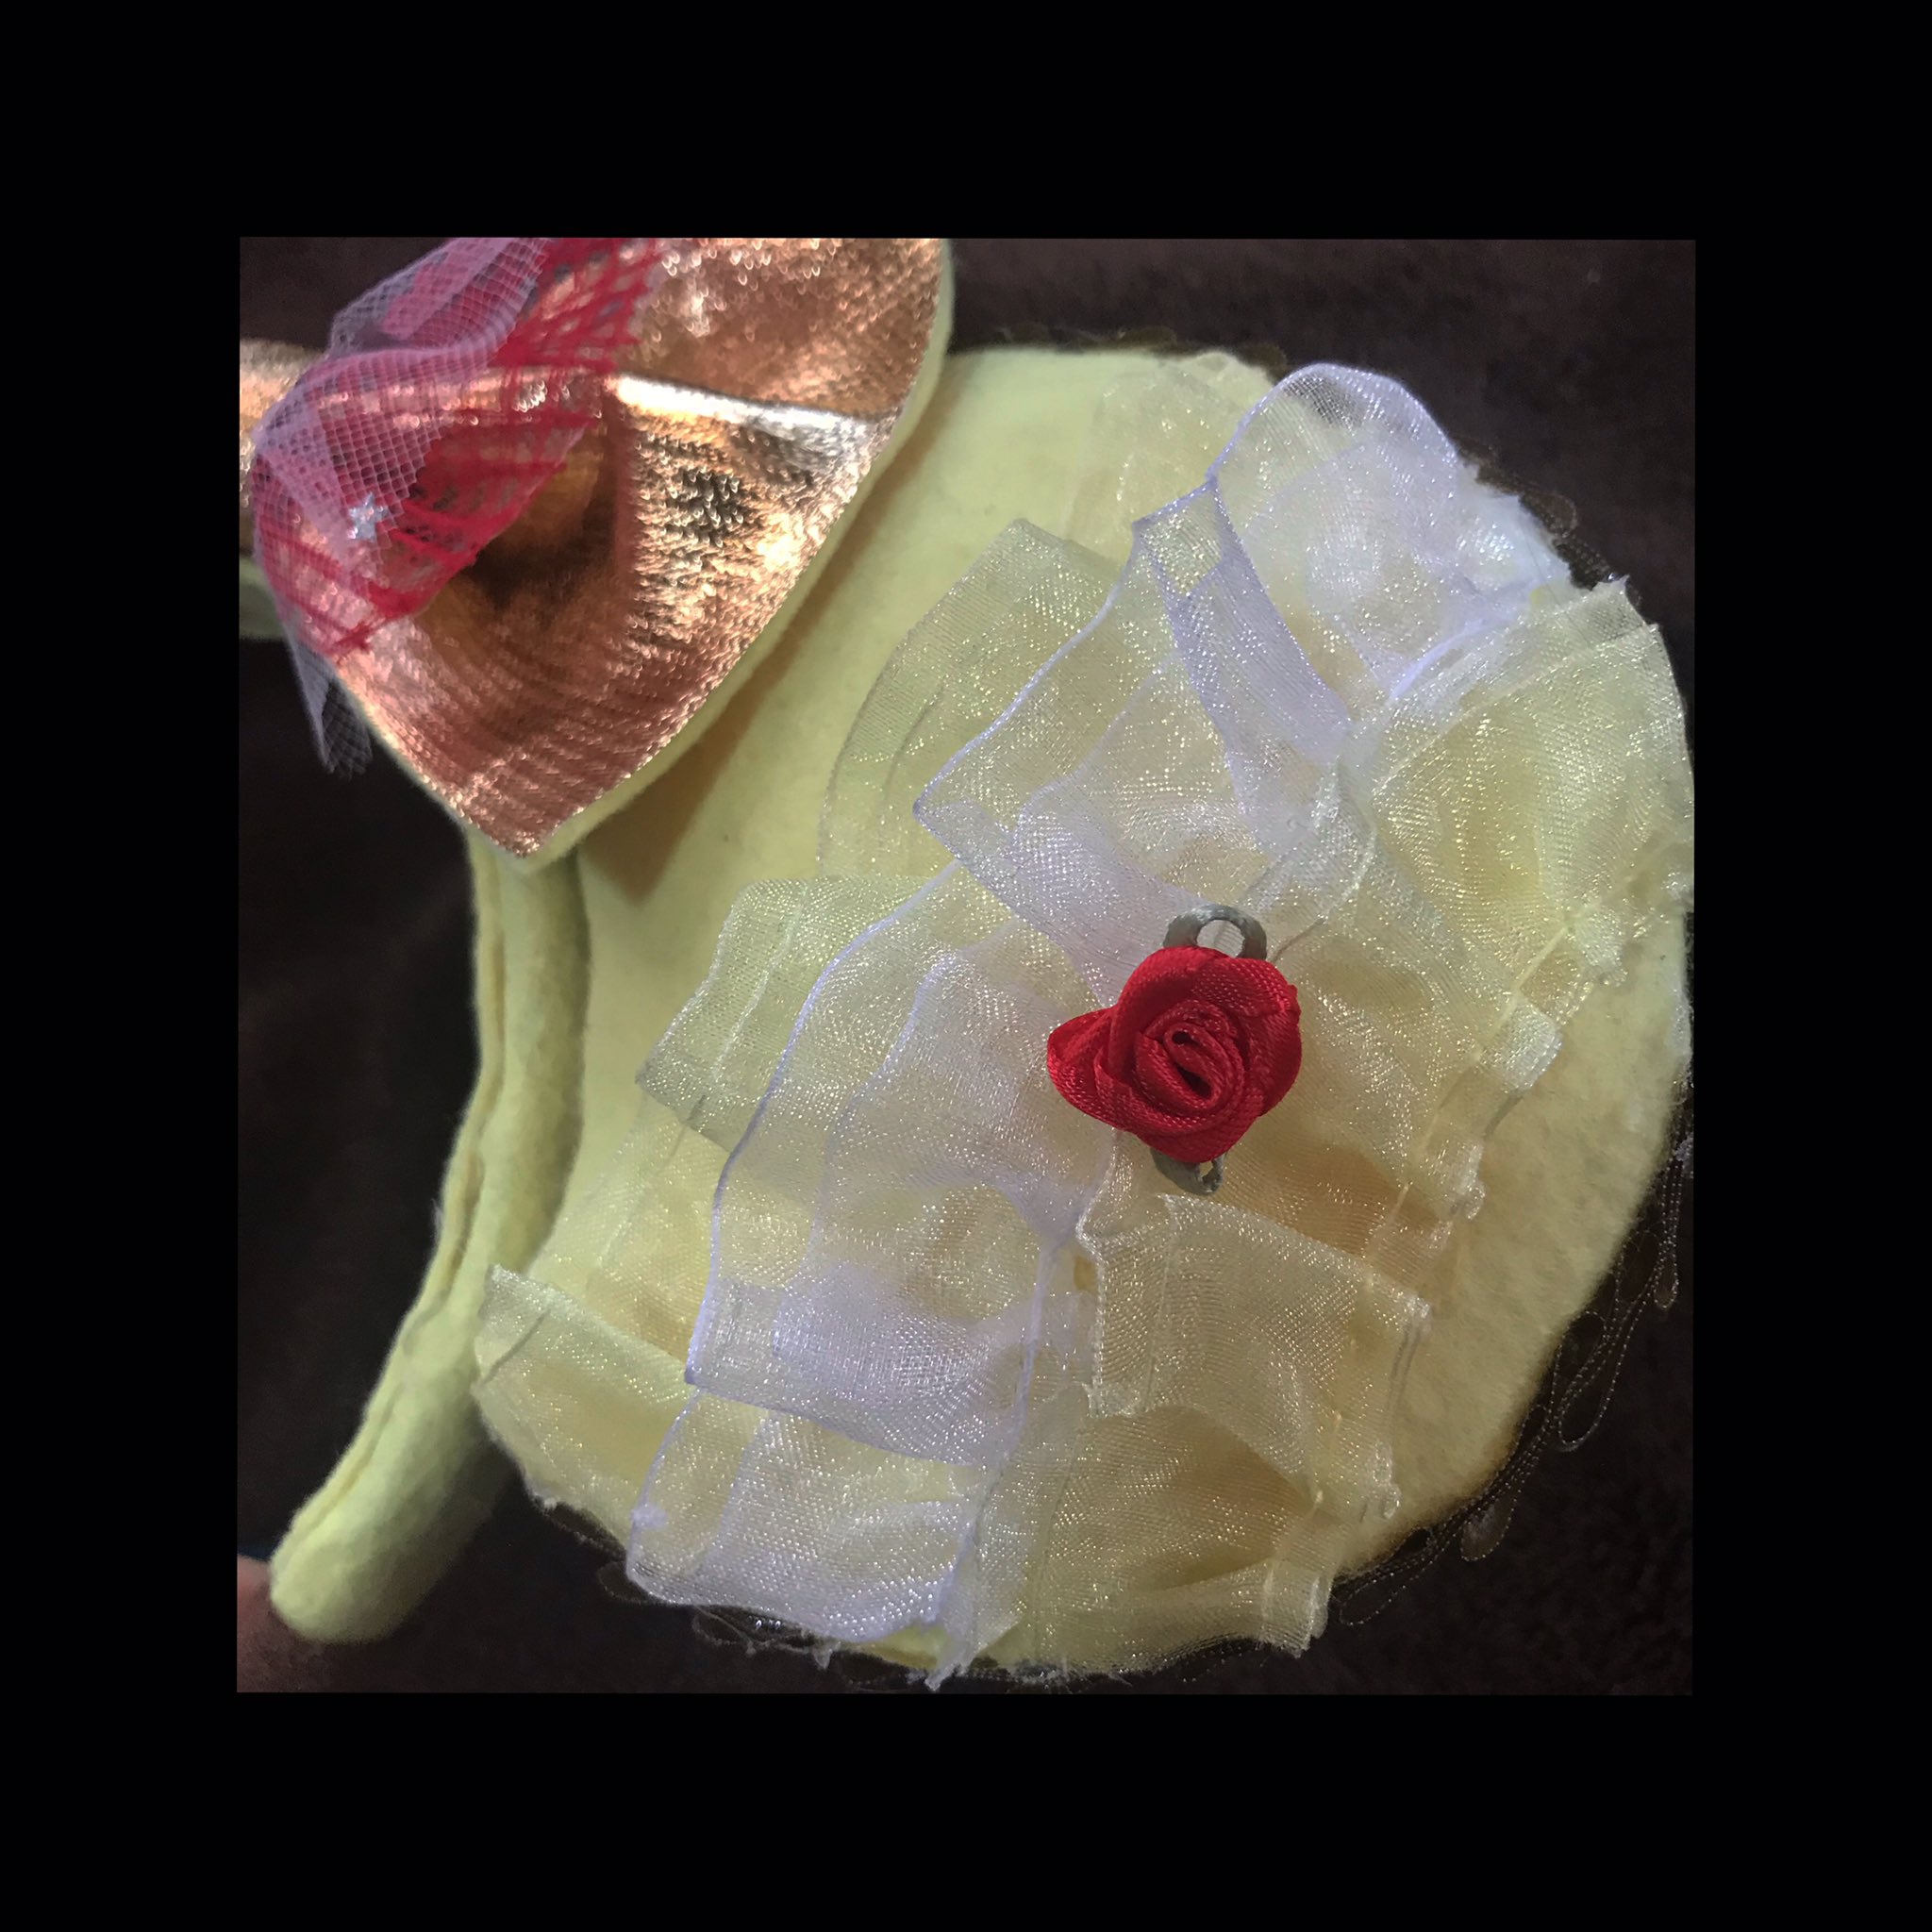 Shuko 手作りカチューシャ第3弾 ベルイメージです どお 笑 赤い薔薇が可愛い ディズニー ディズニーカチューシャ 手作りディズニーカチューシャ 美女と野獣 ベル T Co 4c6bqbgzve Twitter